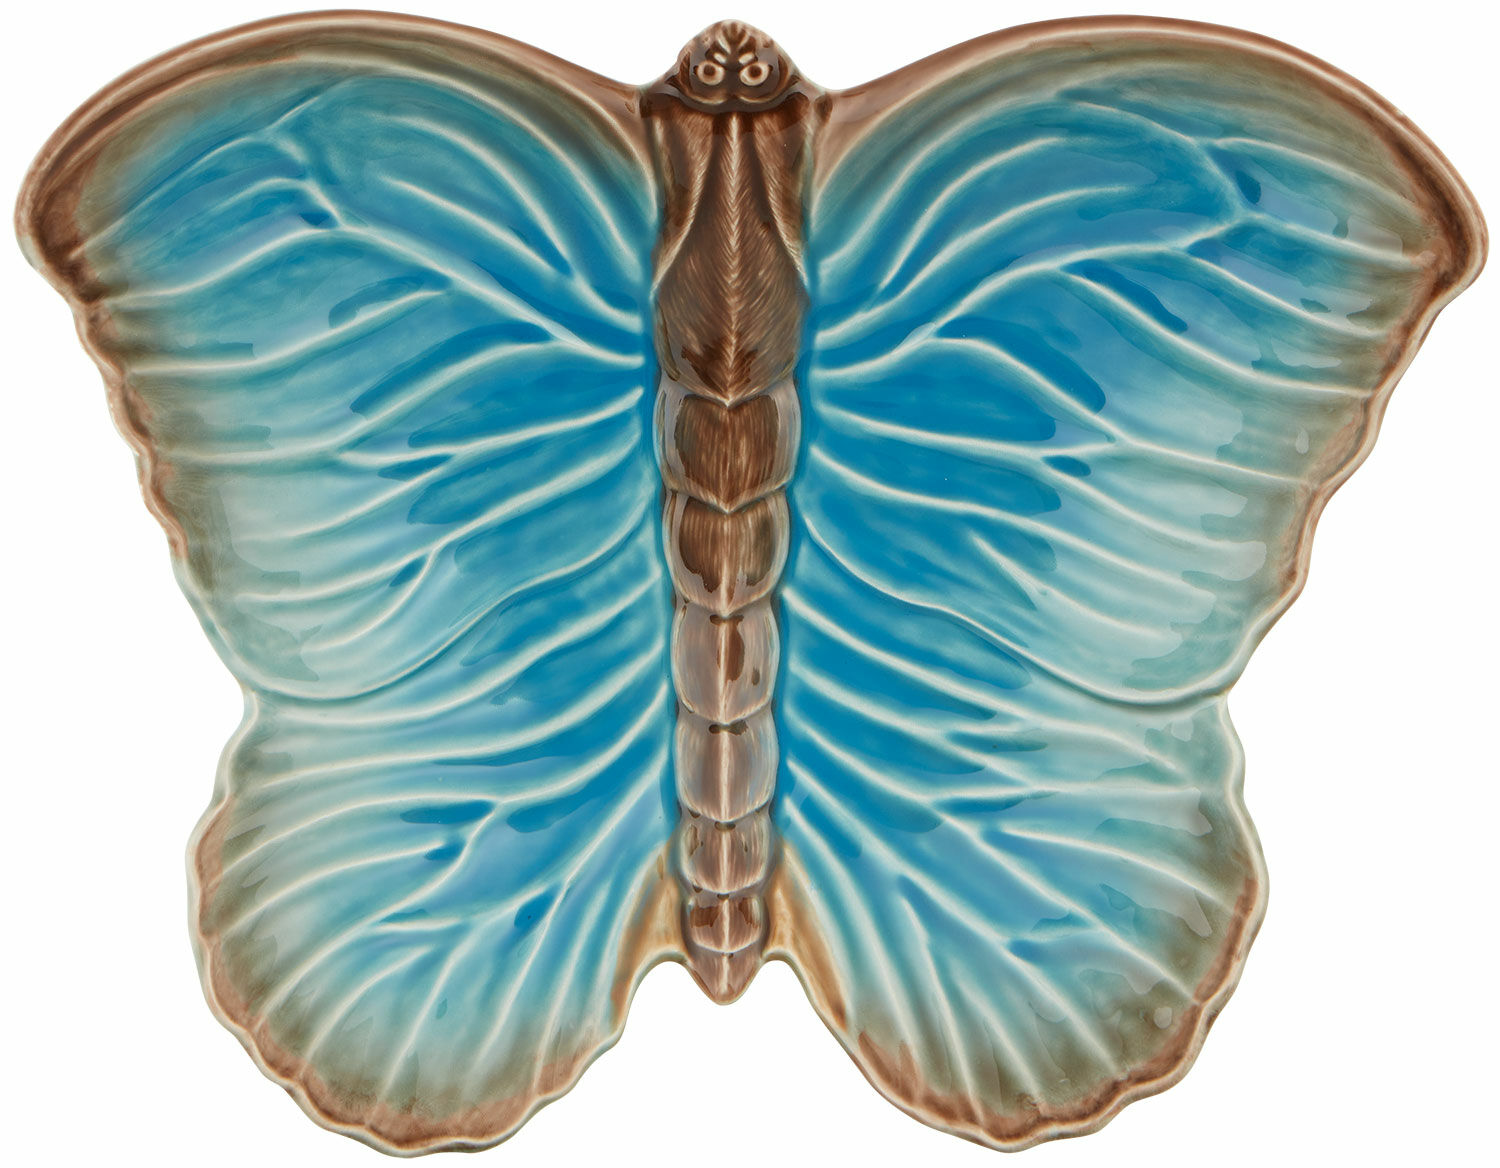 Obstschale "Cloudy Butterflys" - Design Claudia Schiffer von Vista Alegre